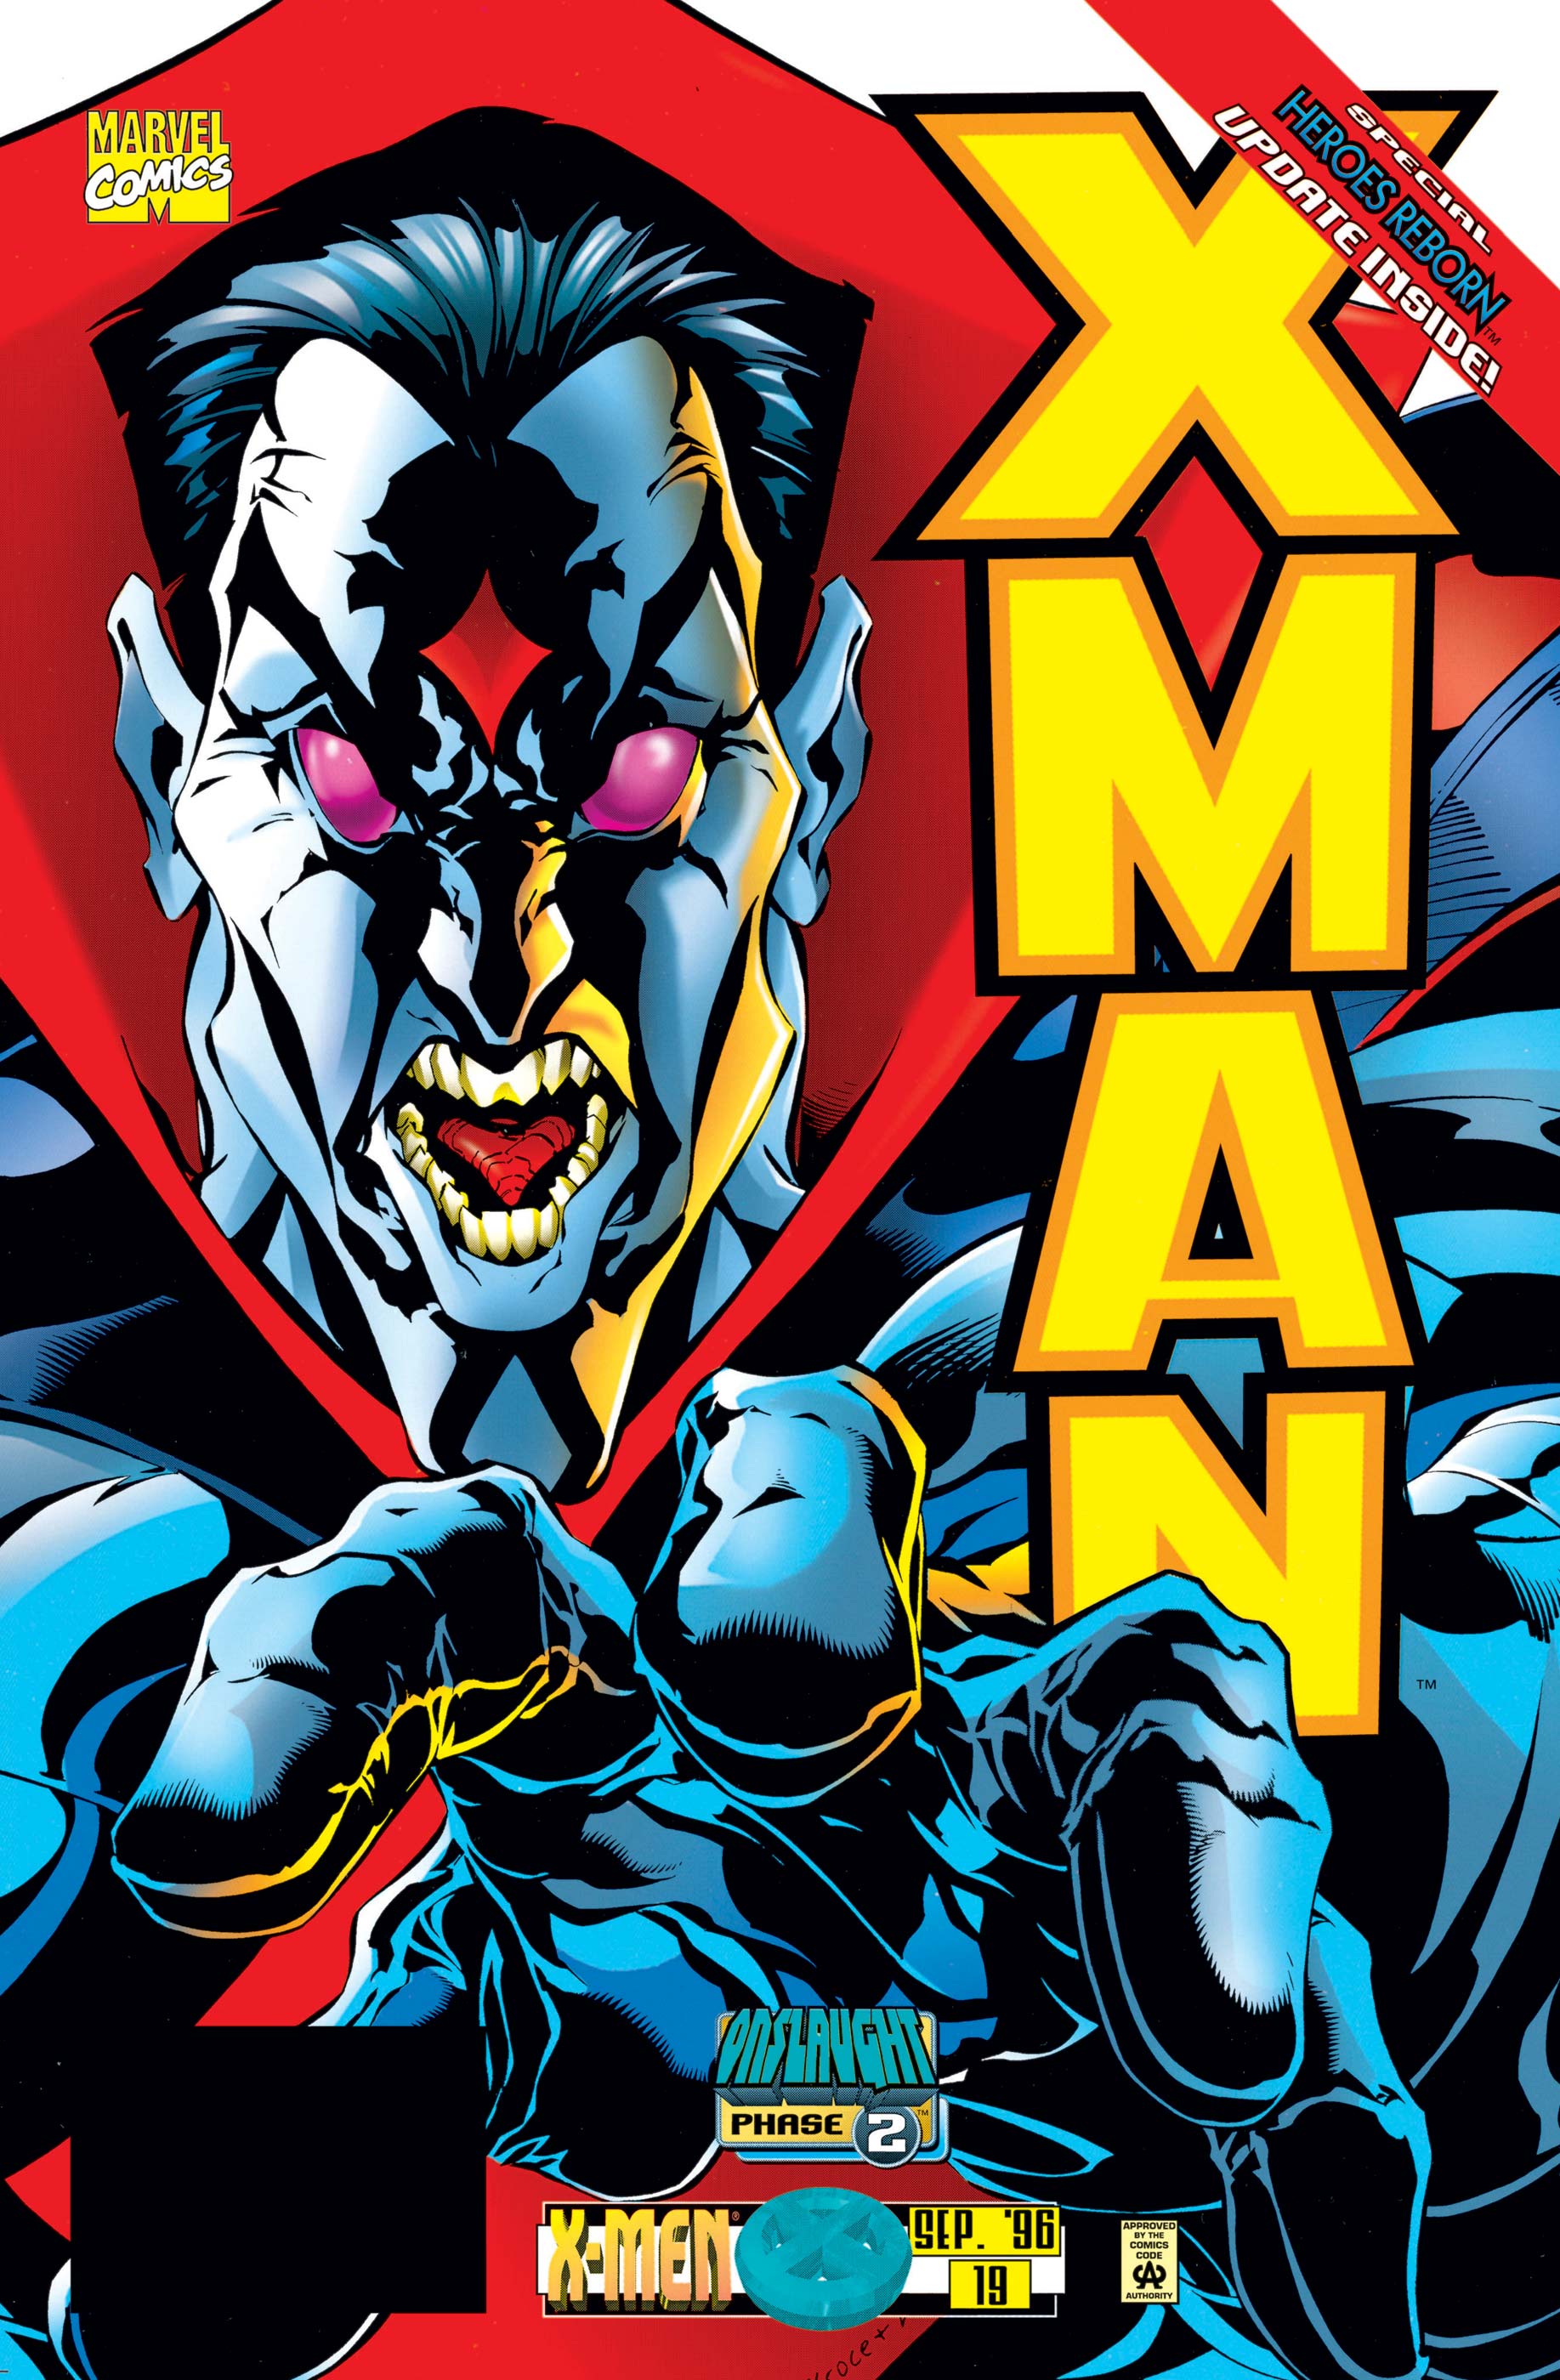 X-Man (1995) #19